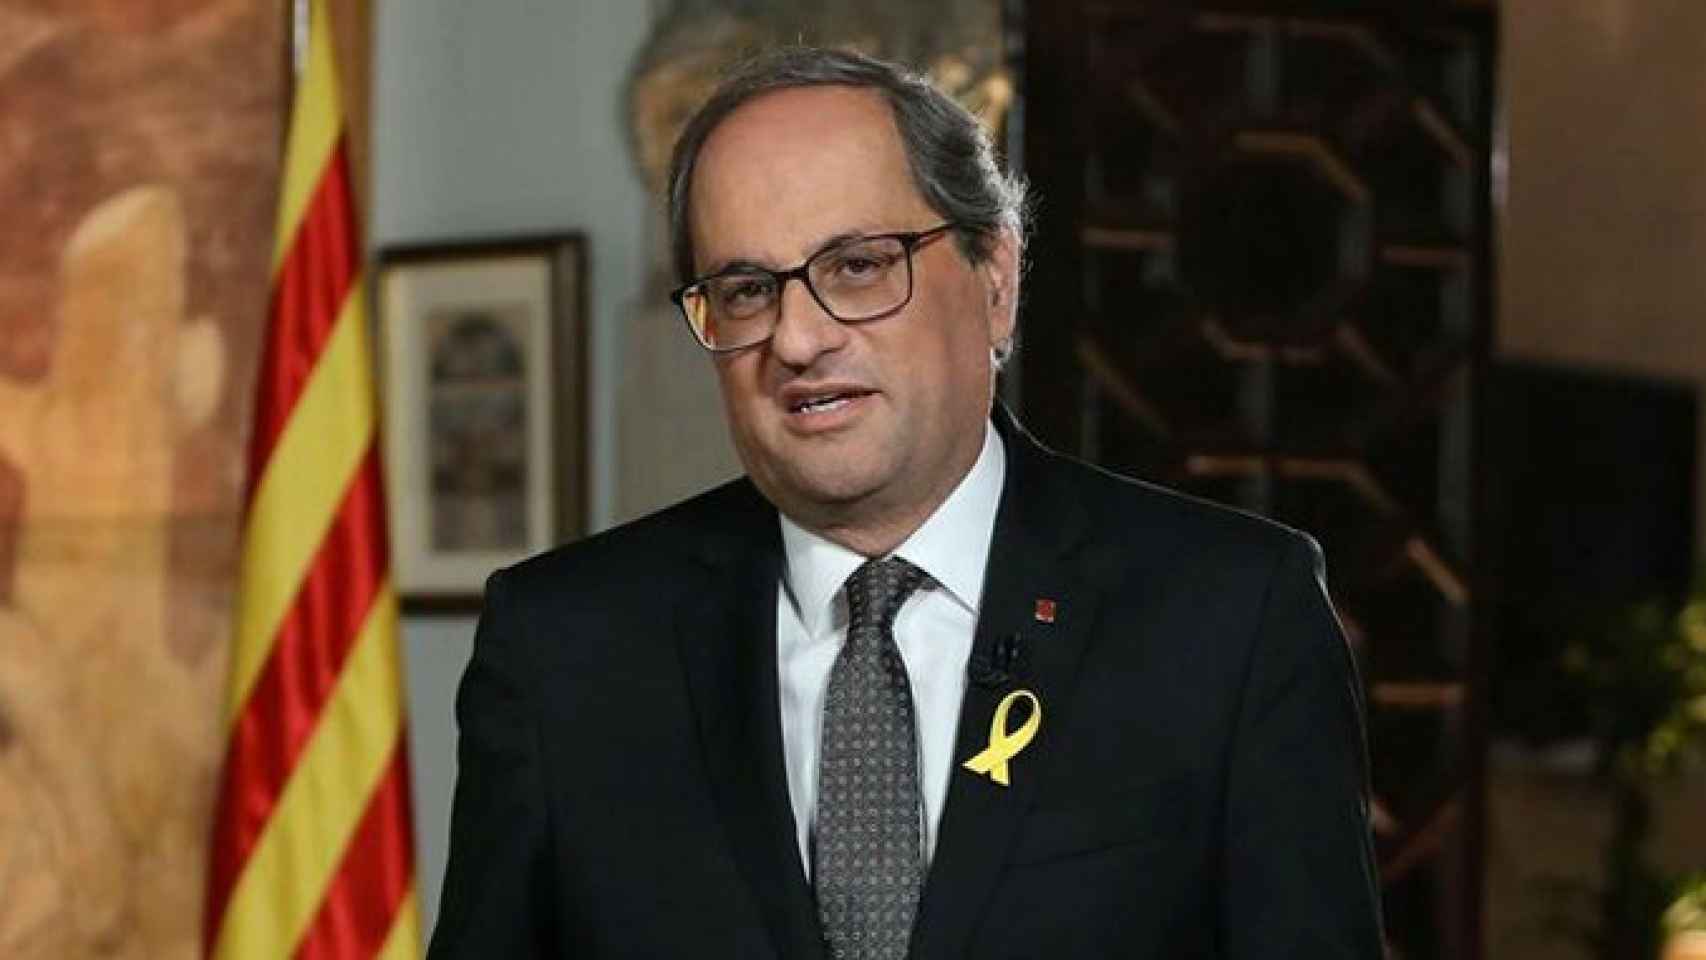 El presidente de la Generalitat, Quim Torra, que ha presentado una querella contra la Junta Electoral / EUROPA PRESS